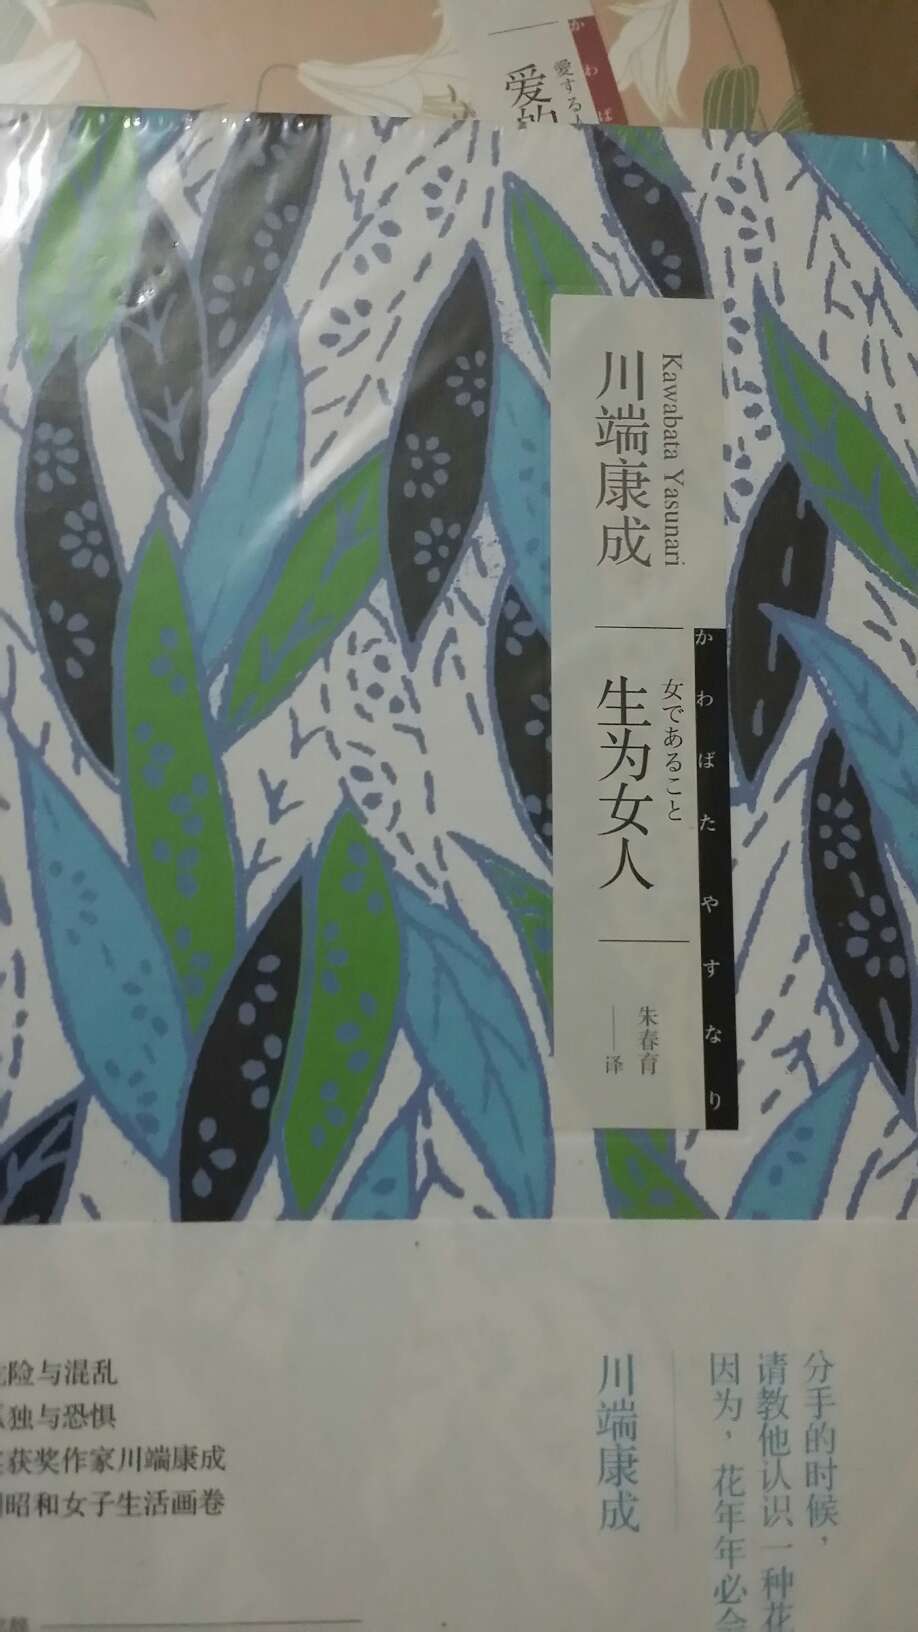 有人说日本文学到川端是个分水岭，他很看不开却细微的令人心疼，也便从中看见自己未将息的悲哀和微小样子。